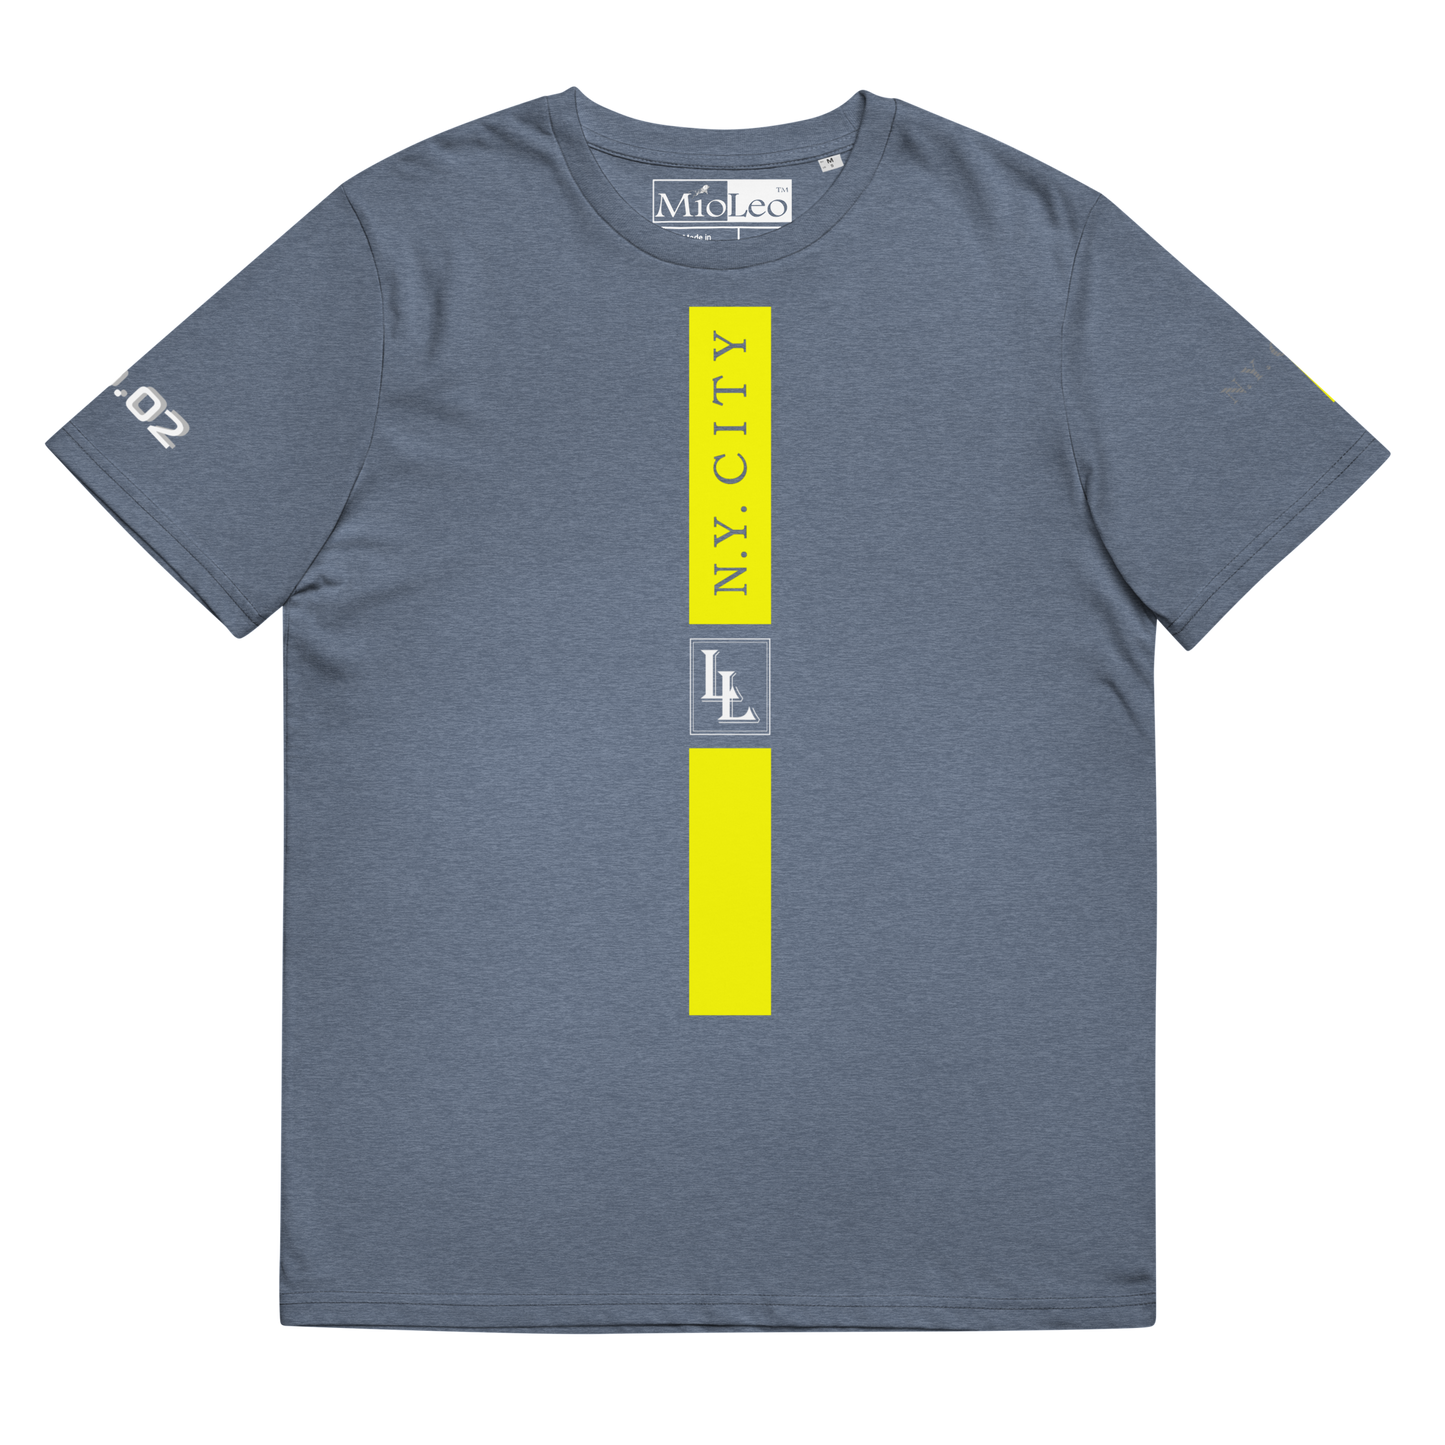 Unisex T-Shirt Black-Line No.02/2 "1 of 5K" by Léon LeRef